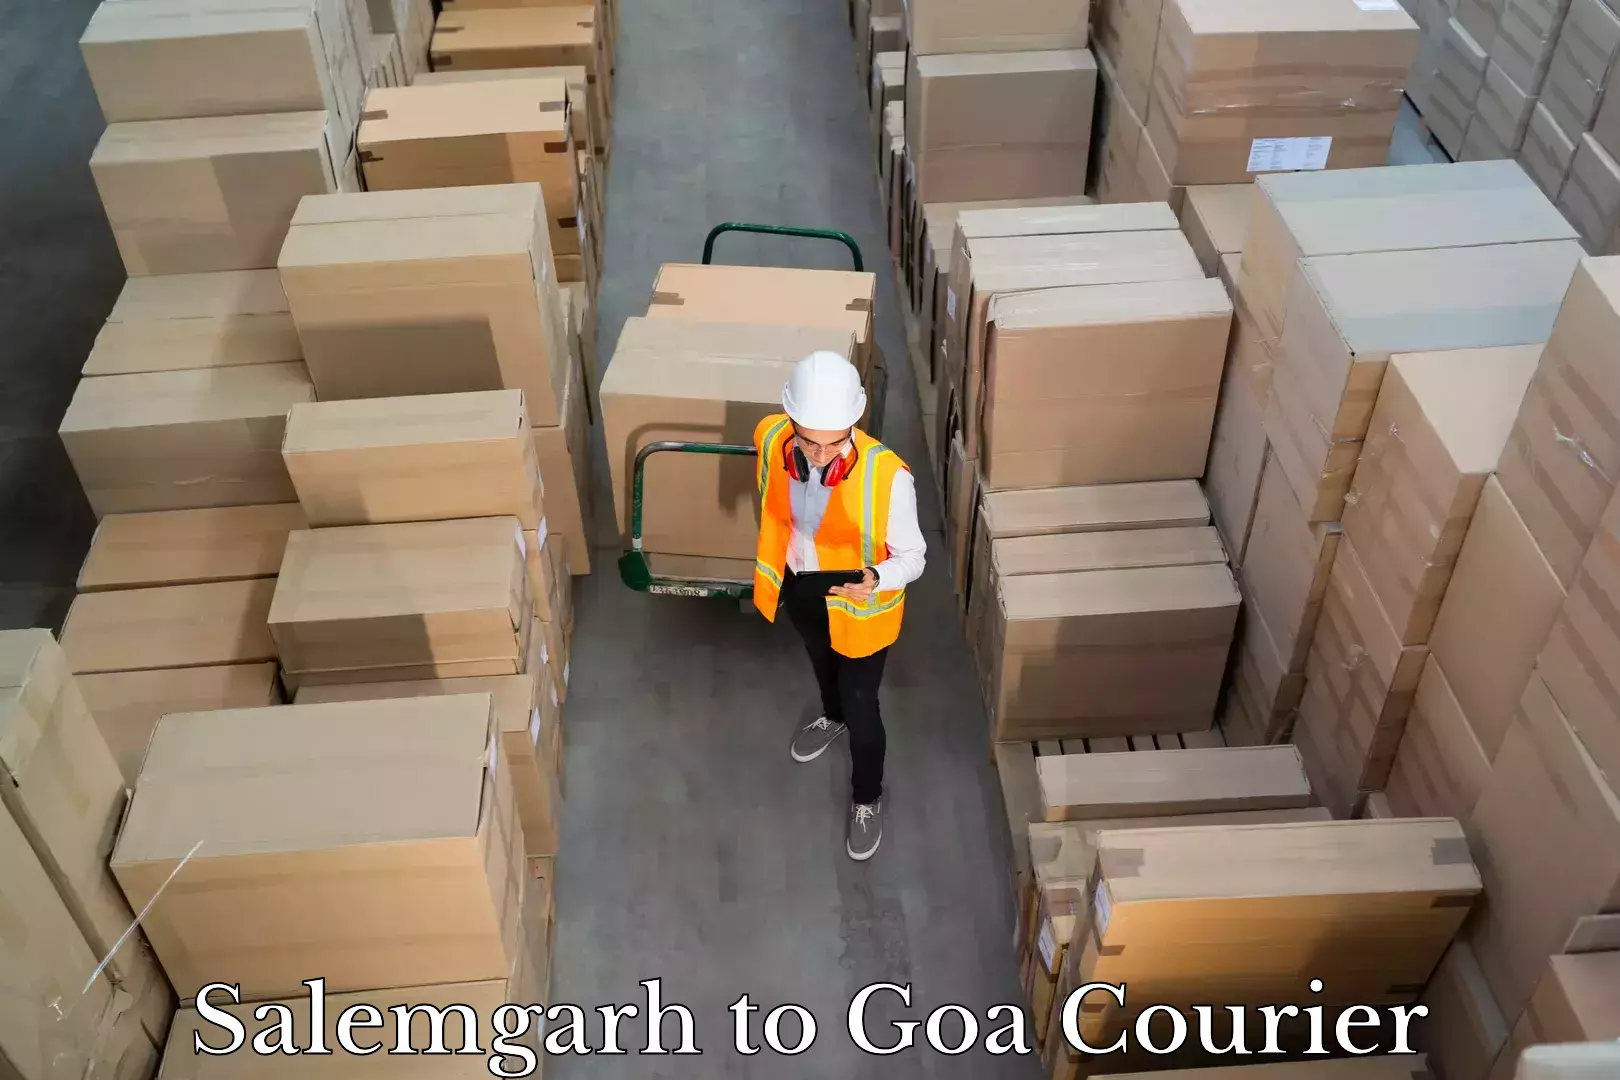 Hassle-free luggage shipping Salemgarh to Goa